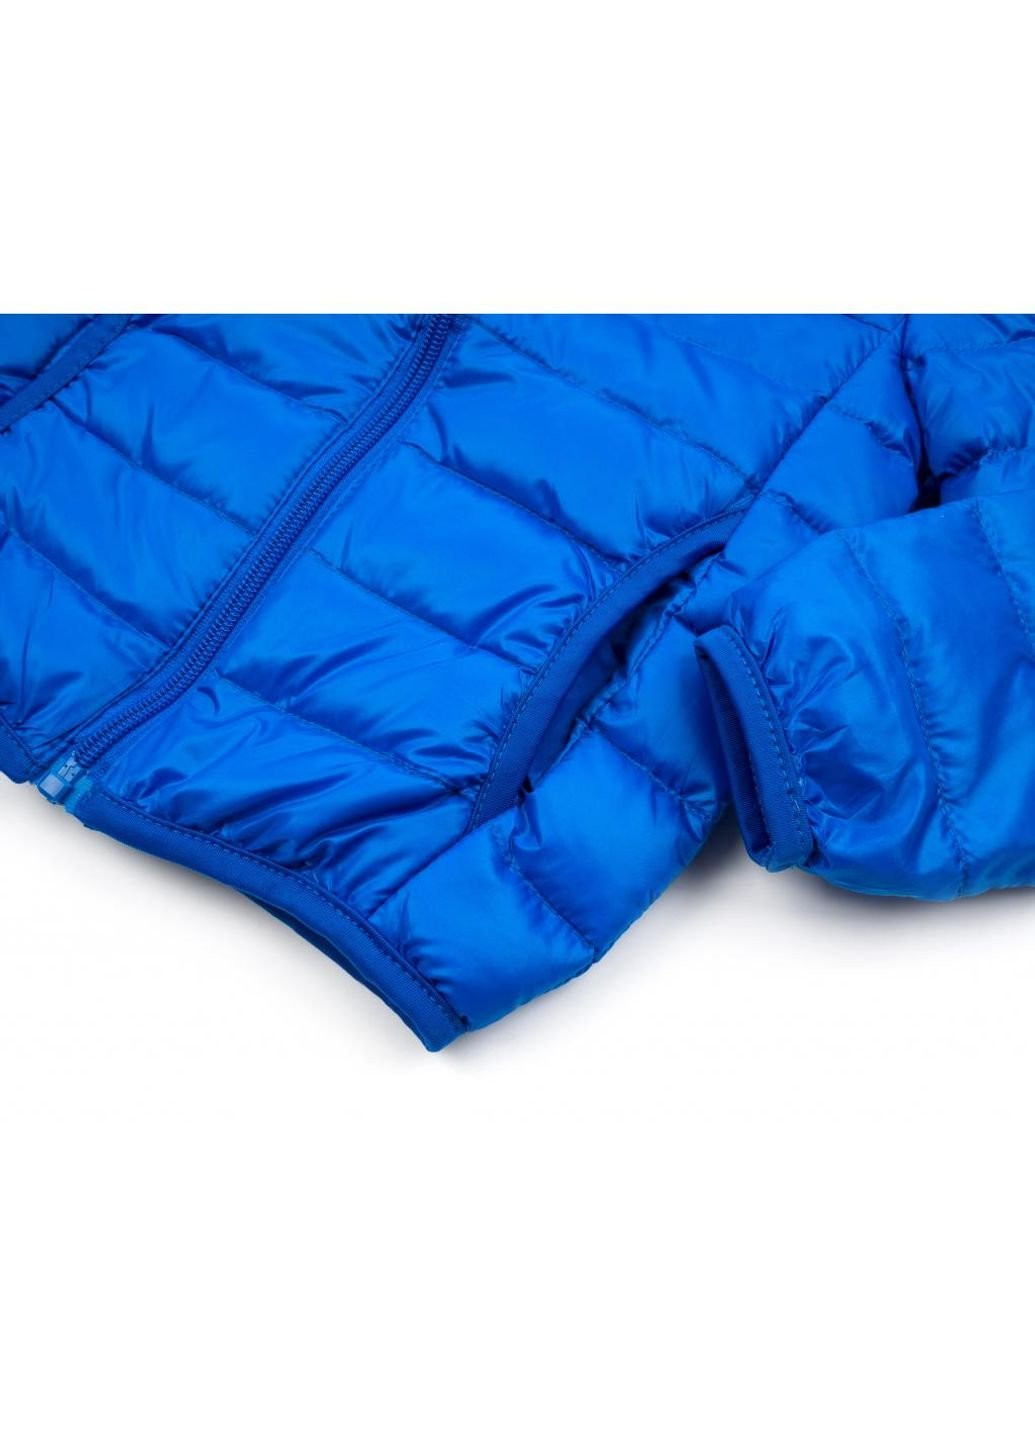 Синя демісезонна куртка пухова (ht-580t-98-lightblue) Kurt